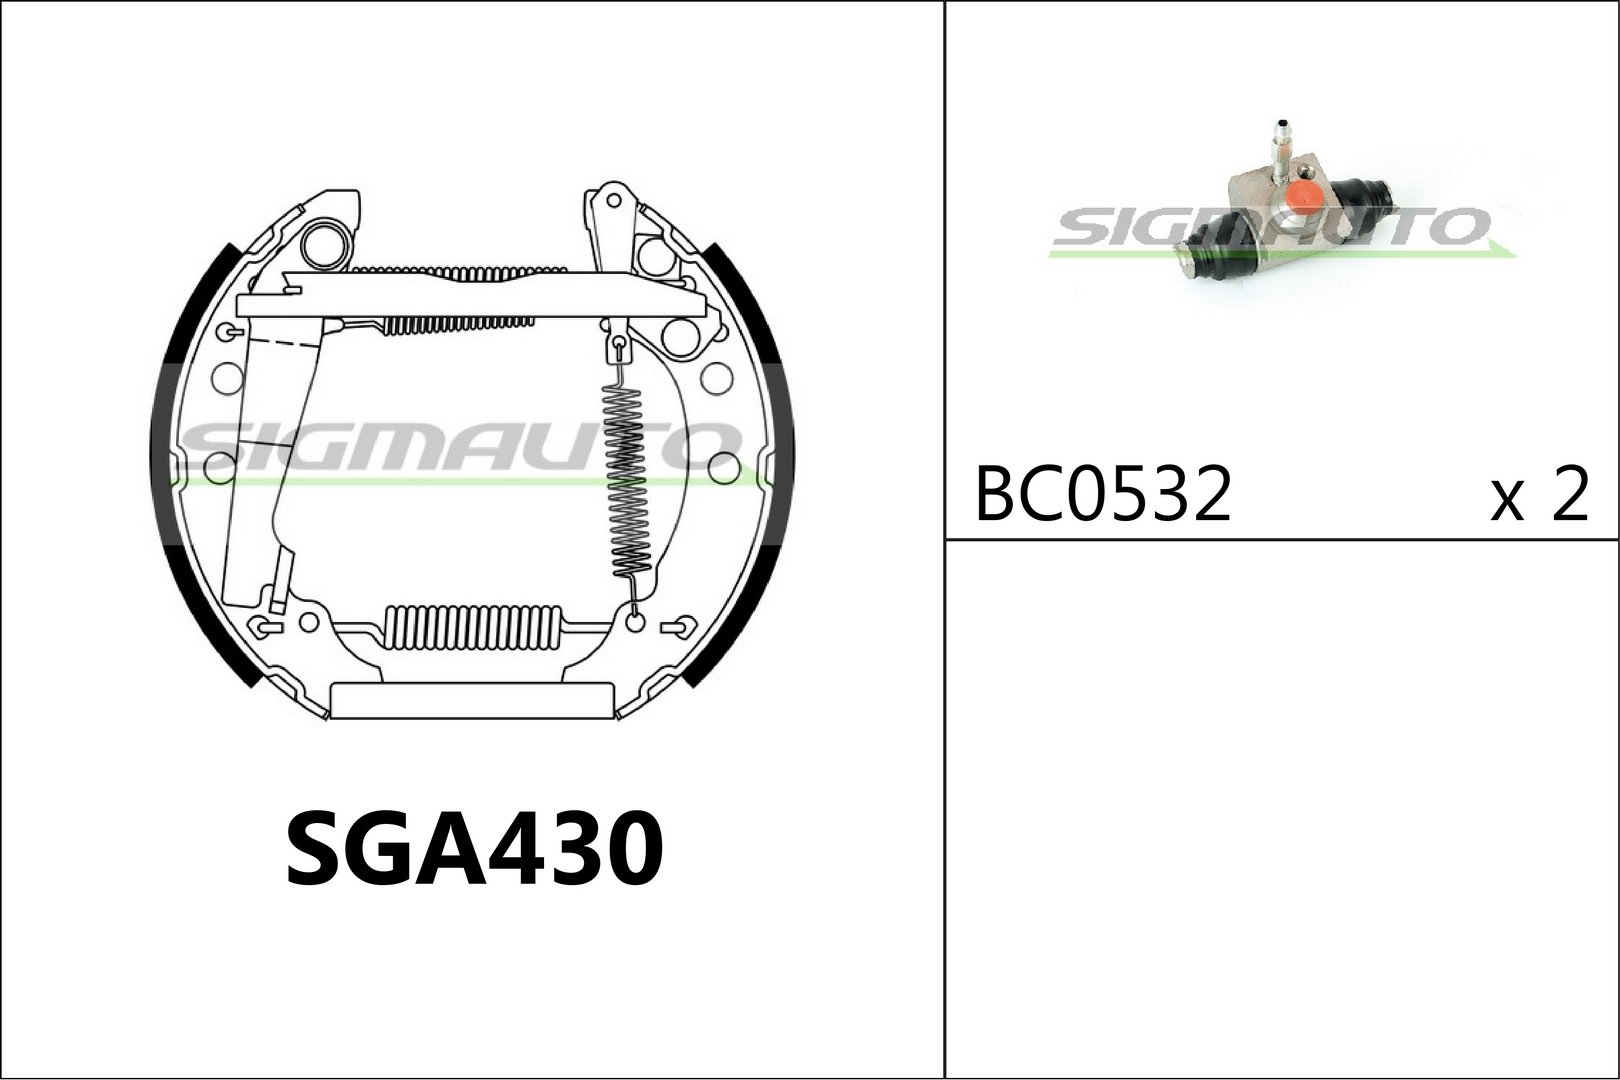 SIGMAUTO SGA430